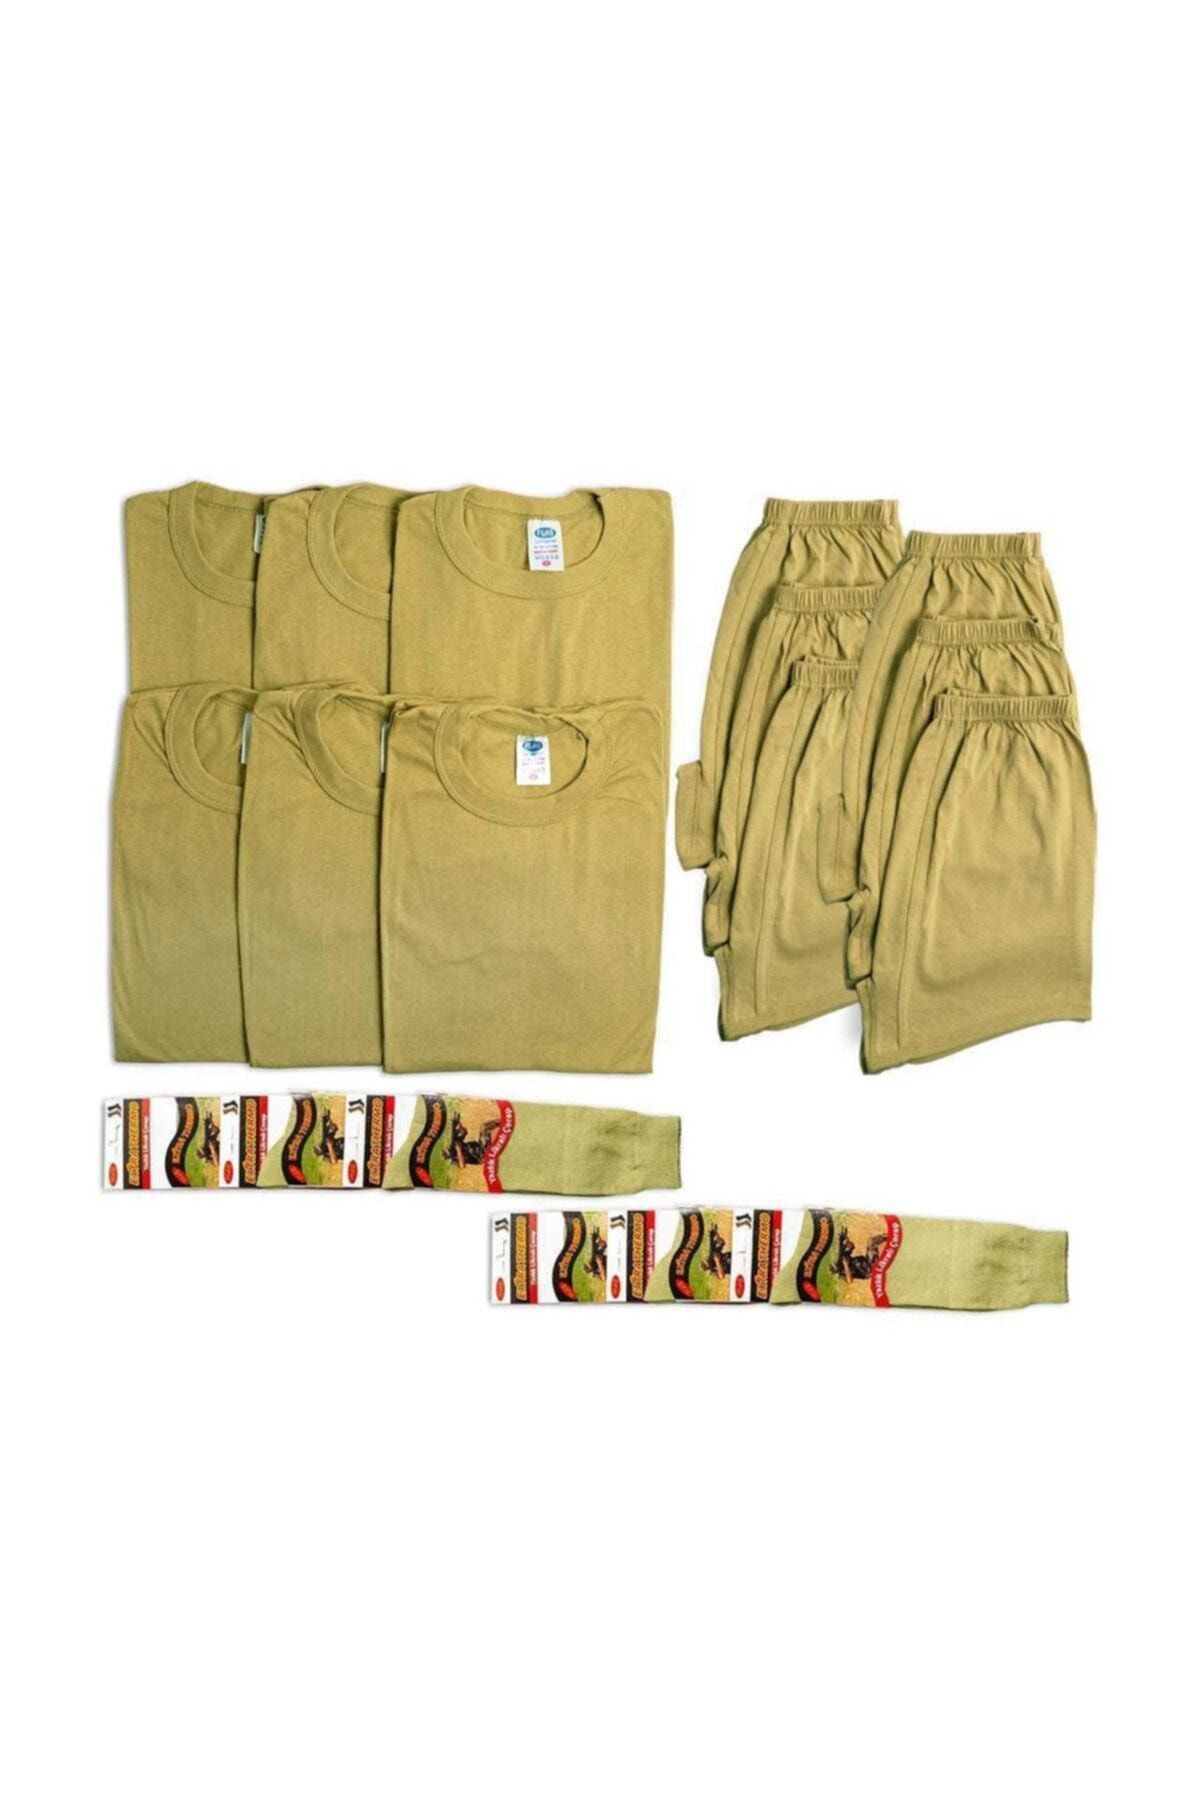 Asker Kolisi 6'lı Askeri Iç Çamaşır Seti - Acemi Ve Bedelli Giyim Seti - Asker Malzemeleri